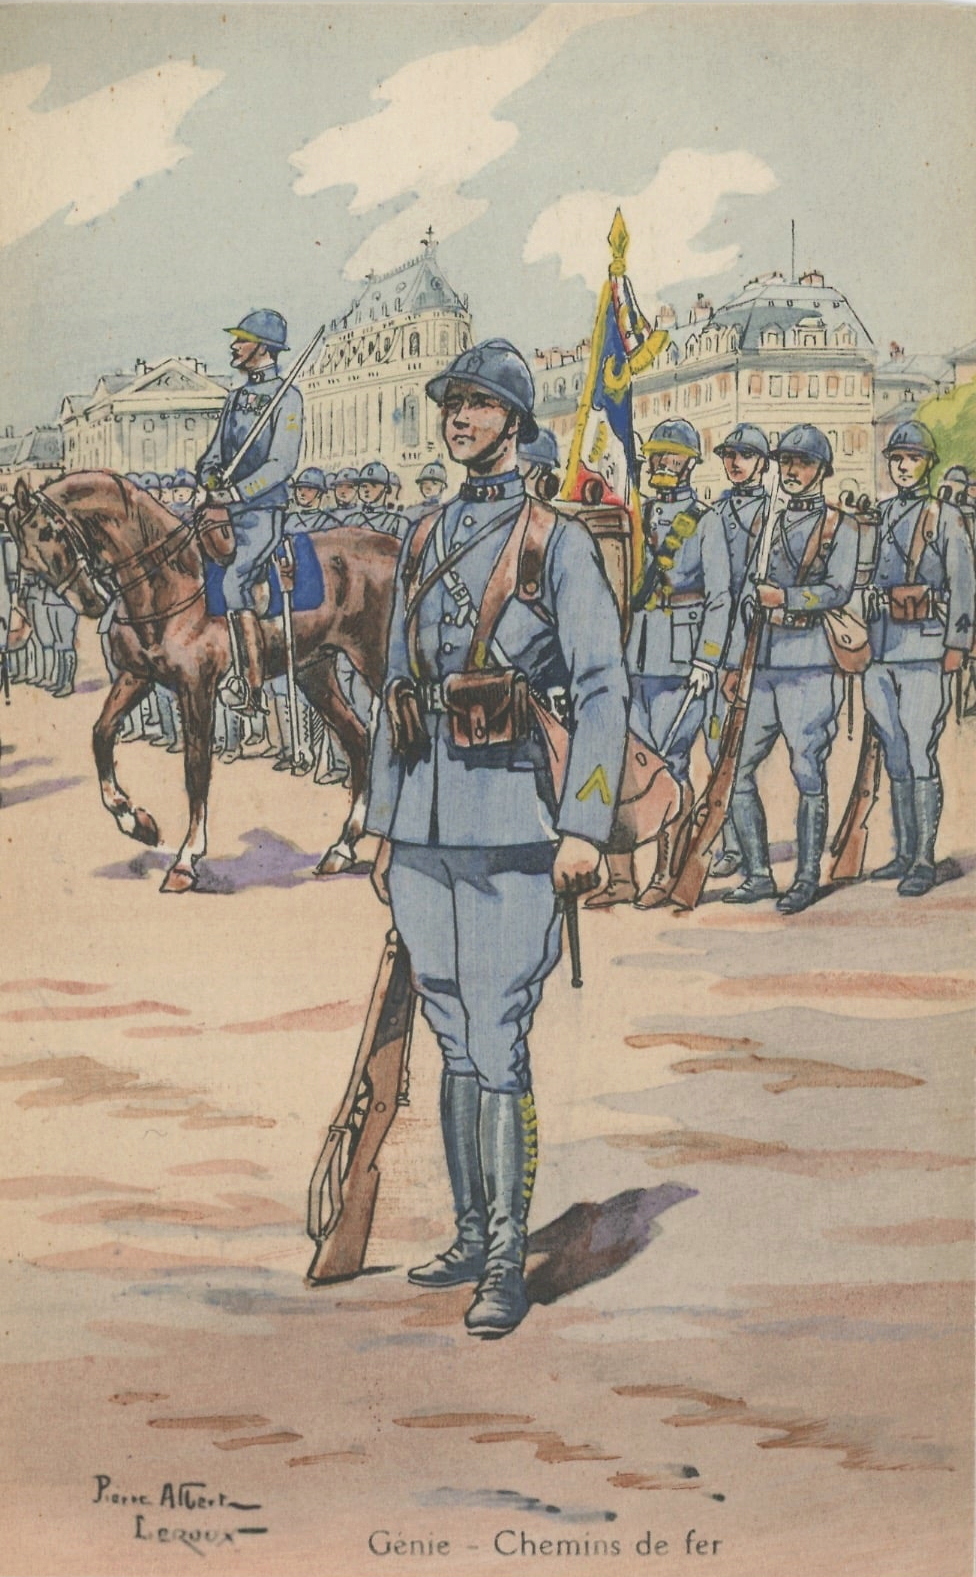 Planches uniformes Armée Française.... - Page 2 Genie_10